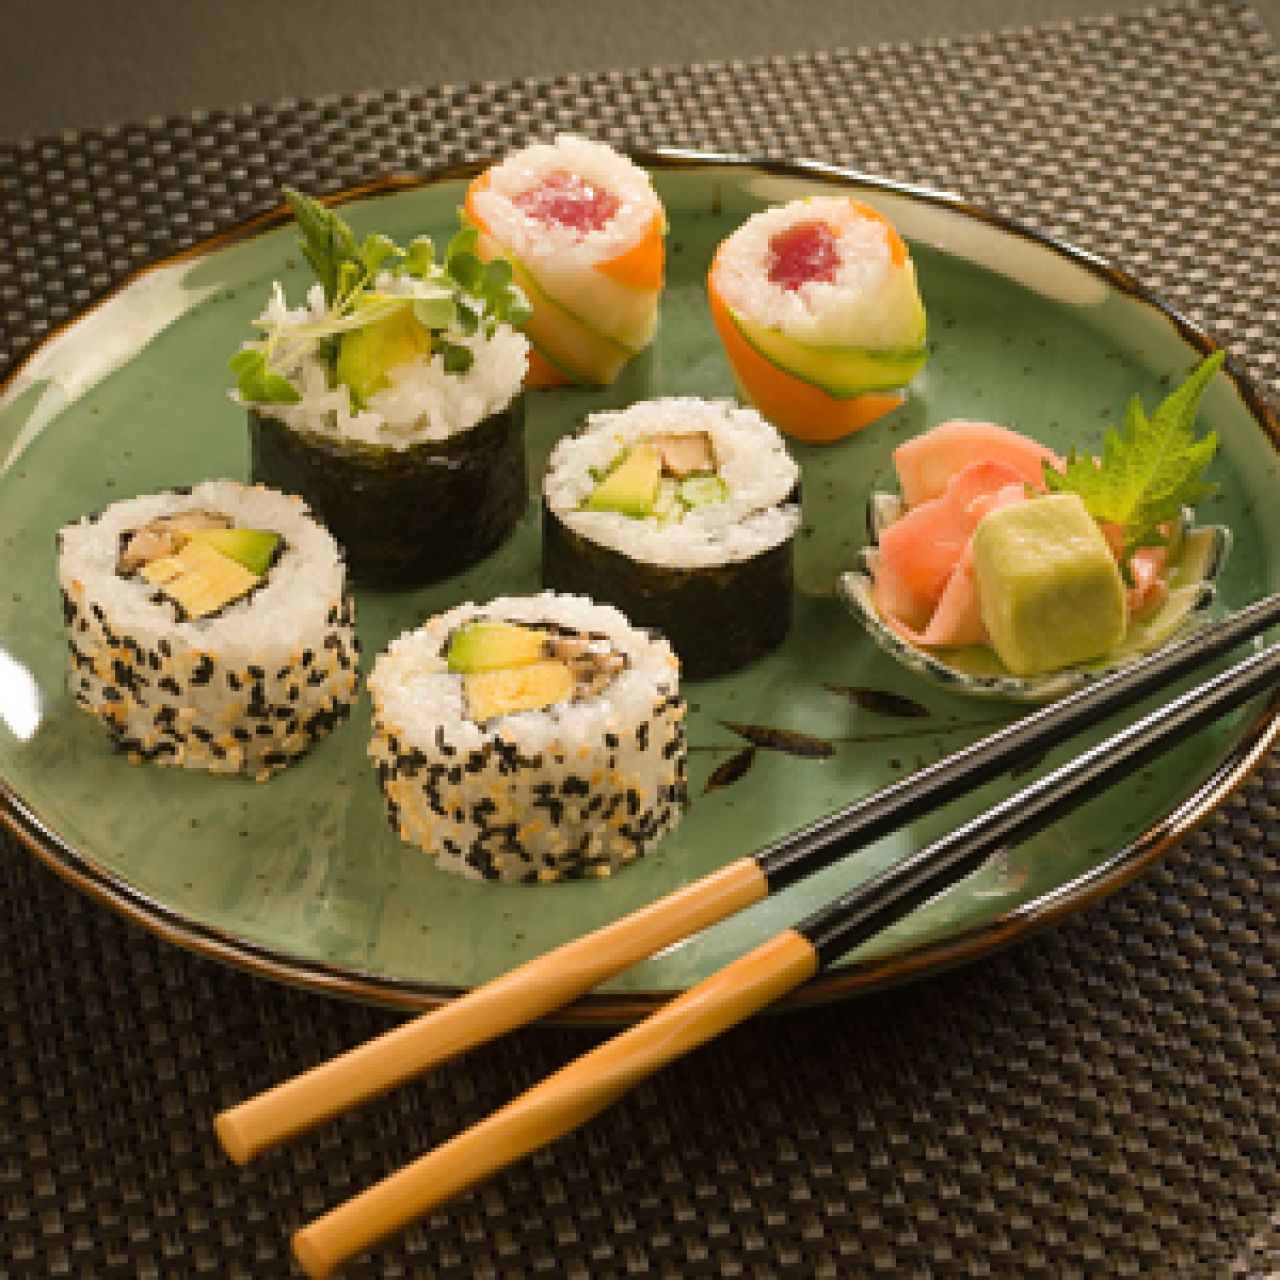 Jedz sushi, by poprawić trawienie